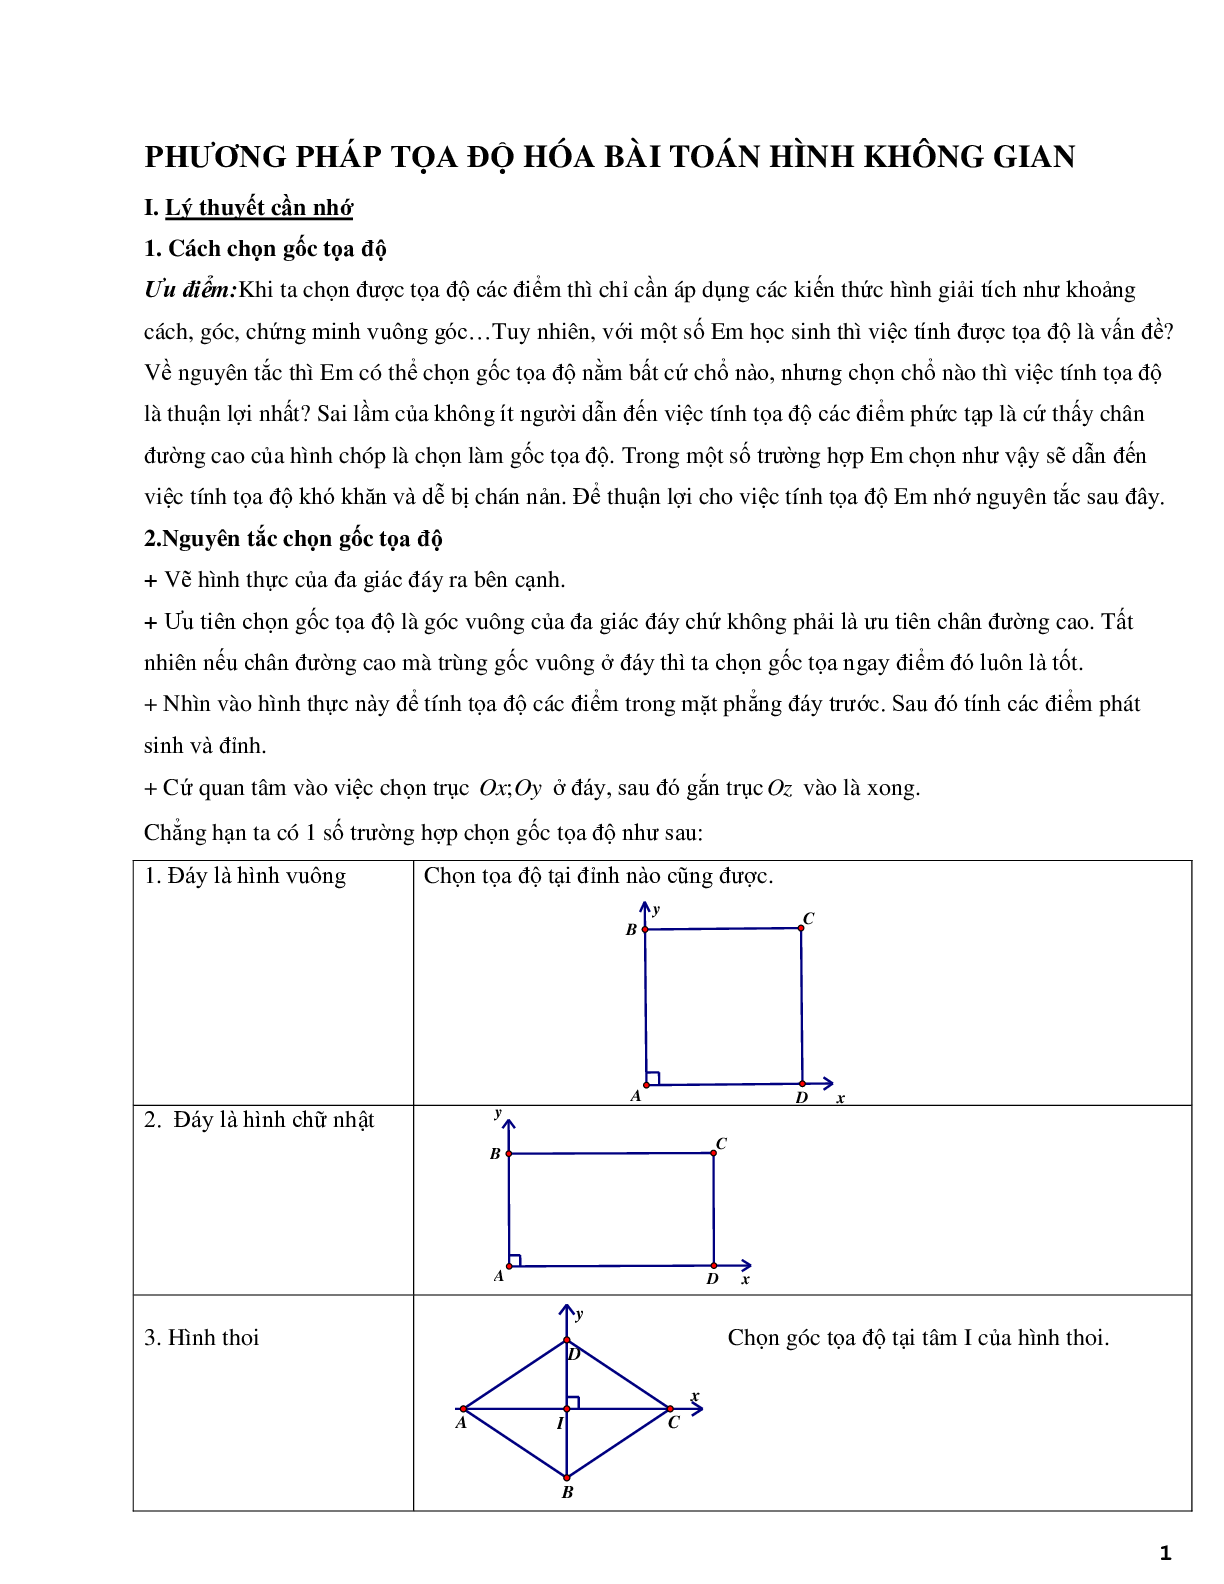 Phương pháp tọa độ hóa bài toán hình học không gian - phần 2 (trang 1)